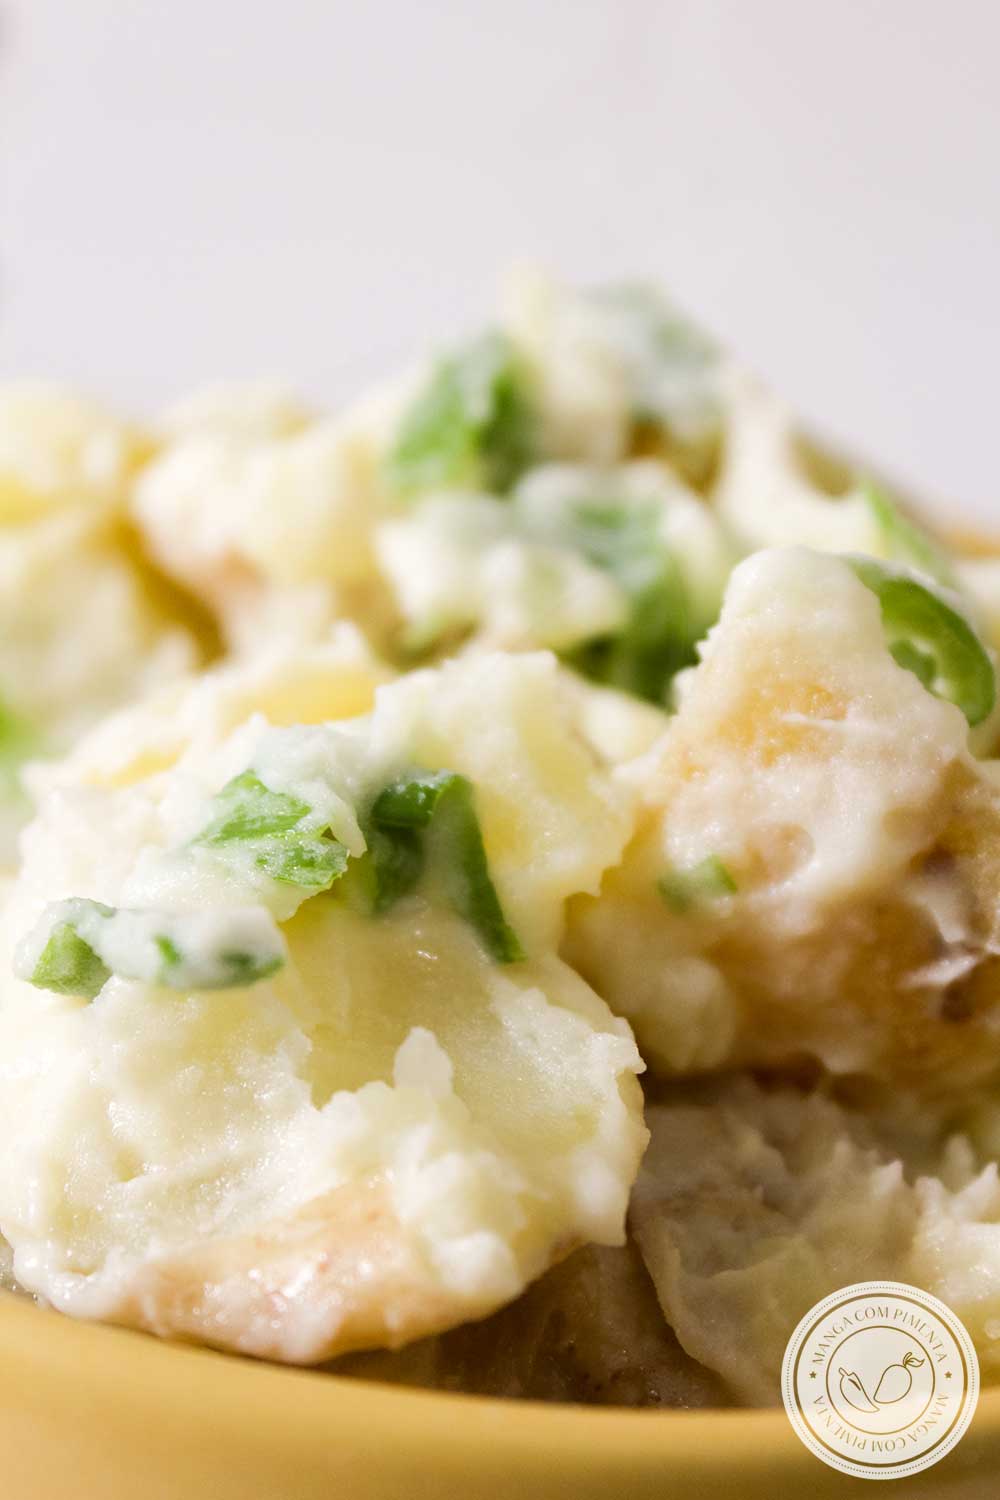 Receita de Salada de Batata Natalina - um prato barato e super fácil de fazer, prepare para os dias de festas!